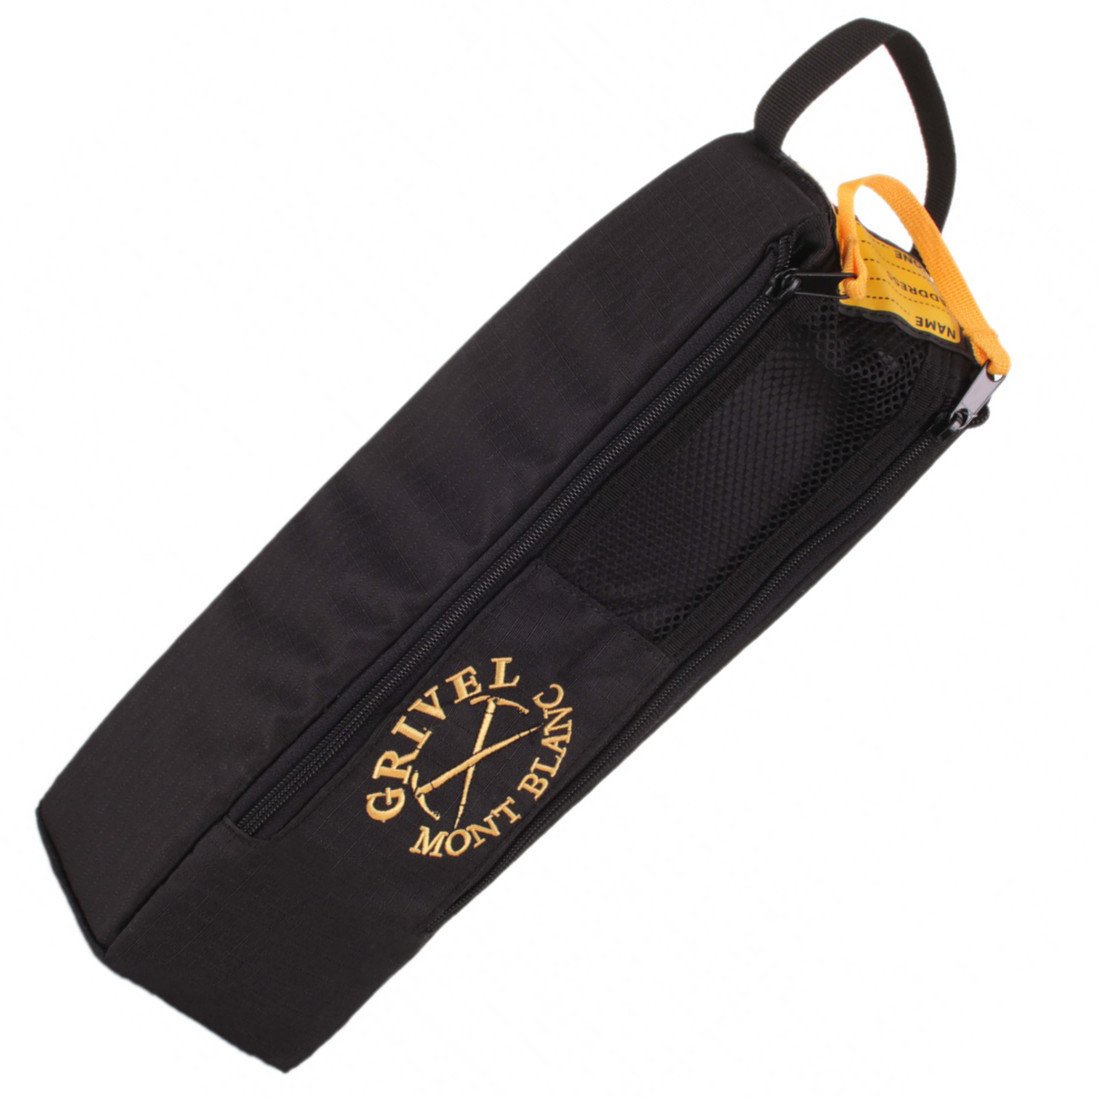 Grivel Crampon Safe sac pour crampons